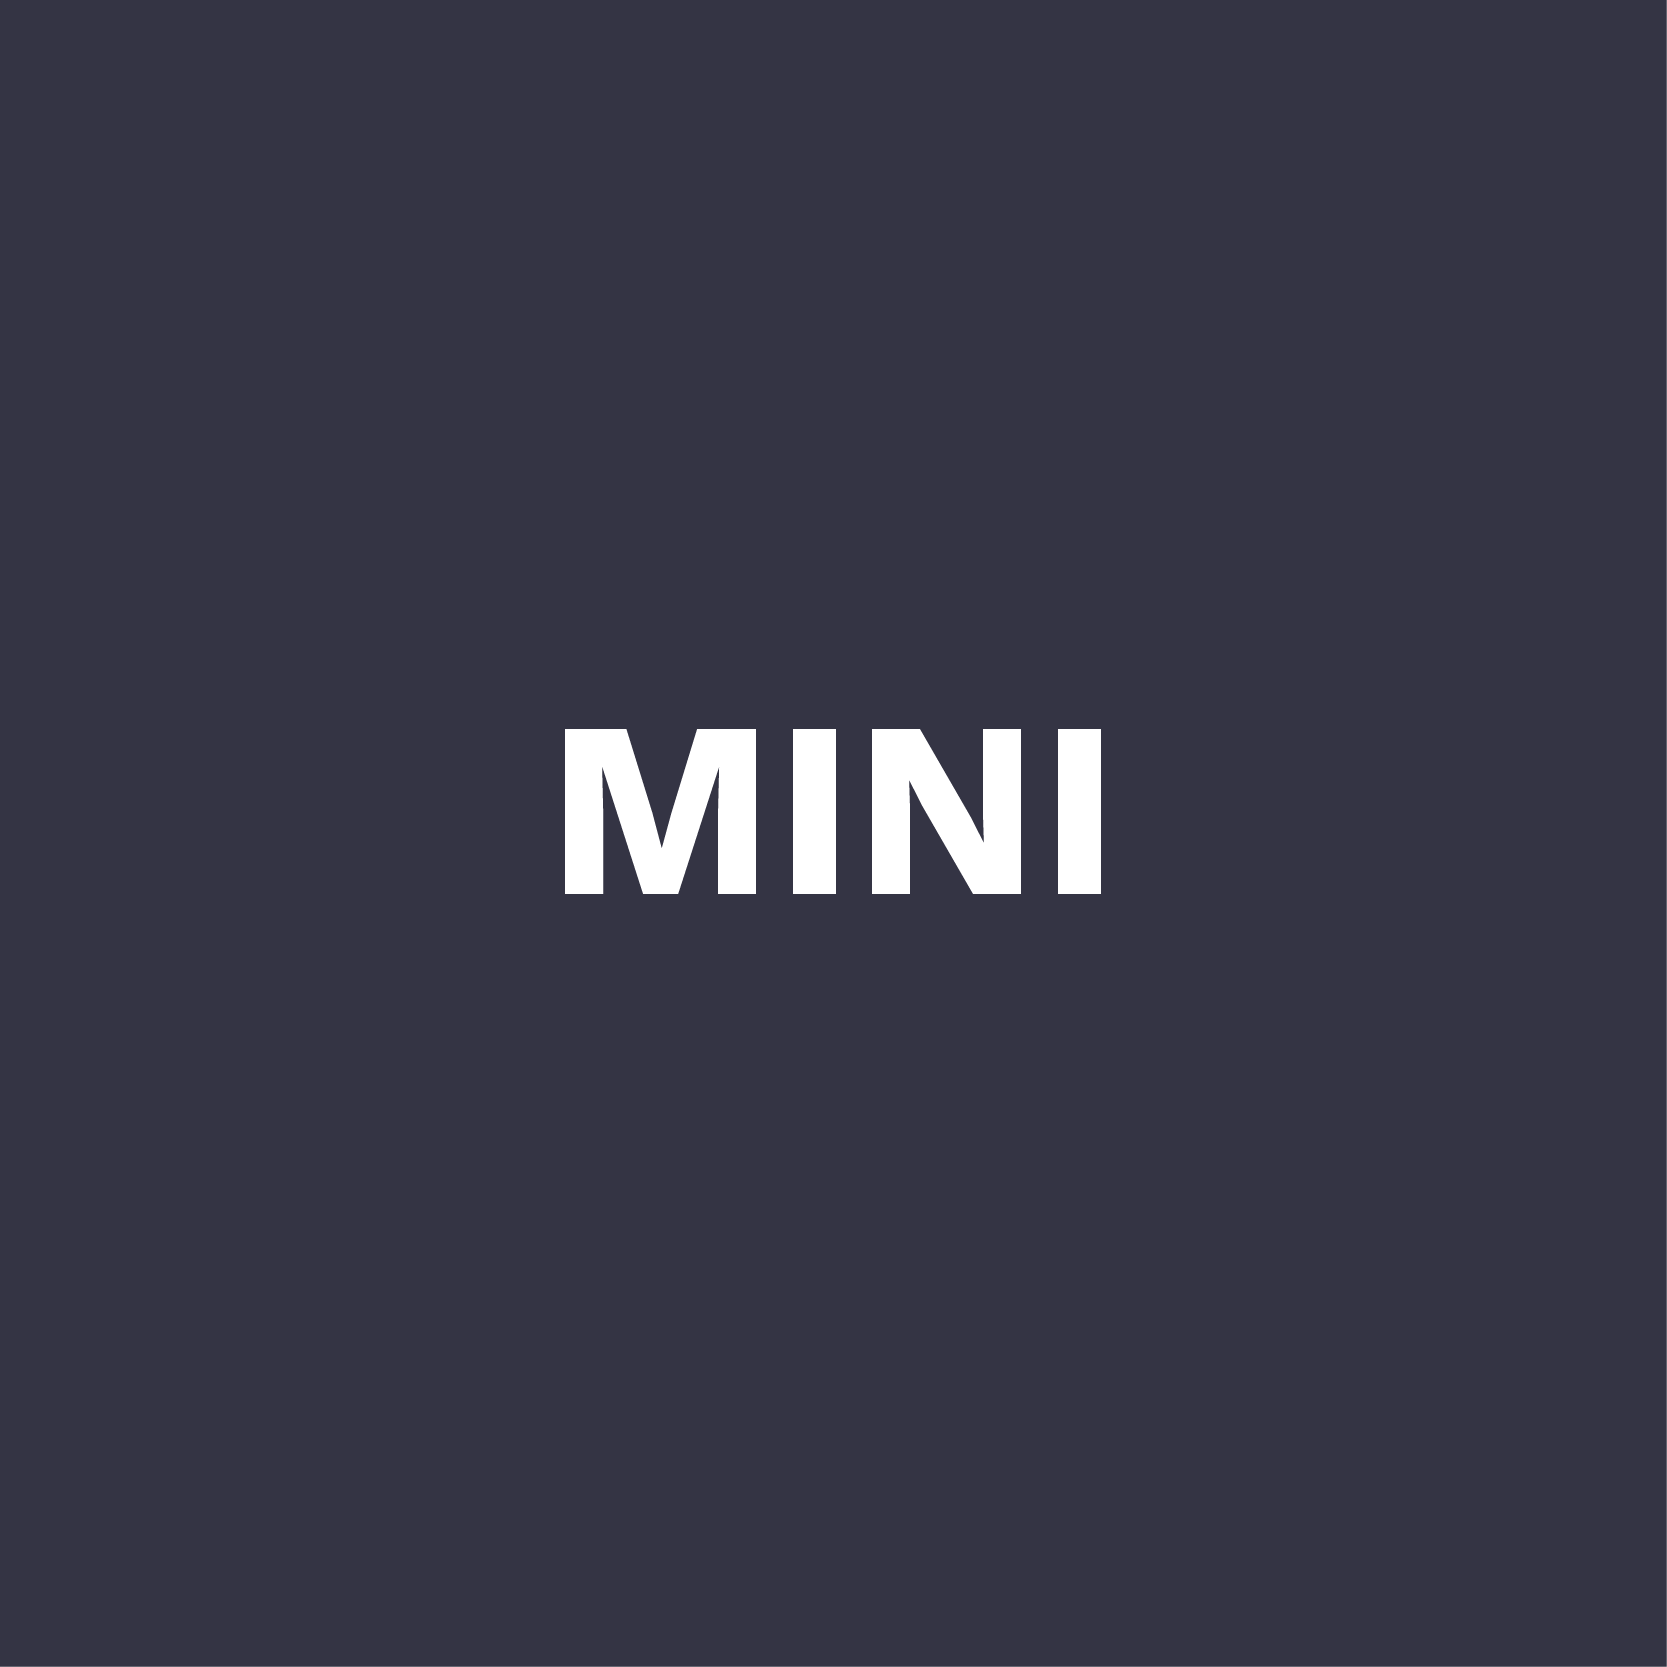 Mini: 1.65 x 2.5 